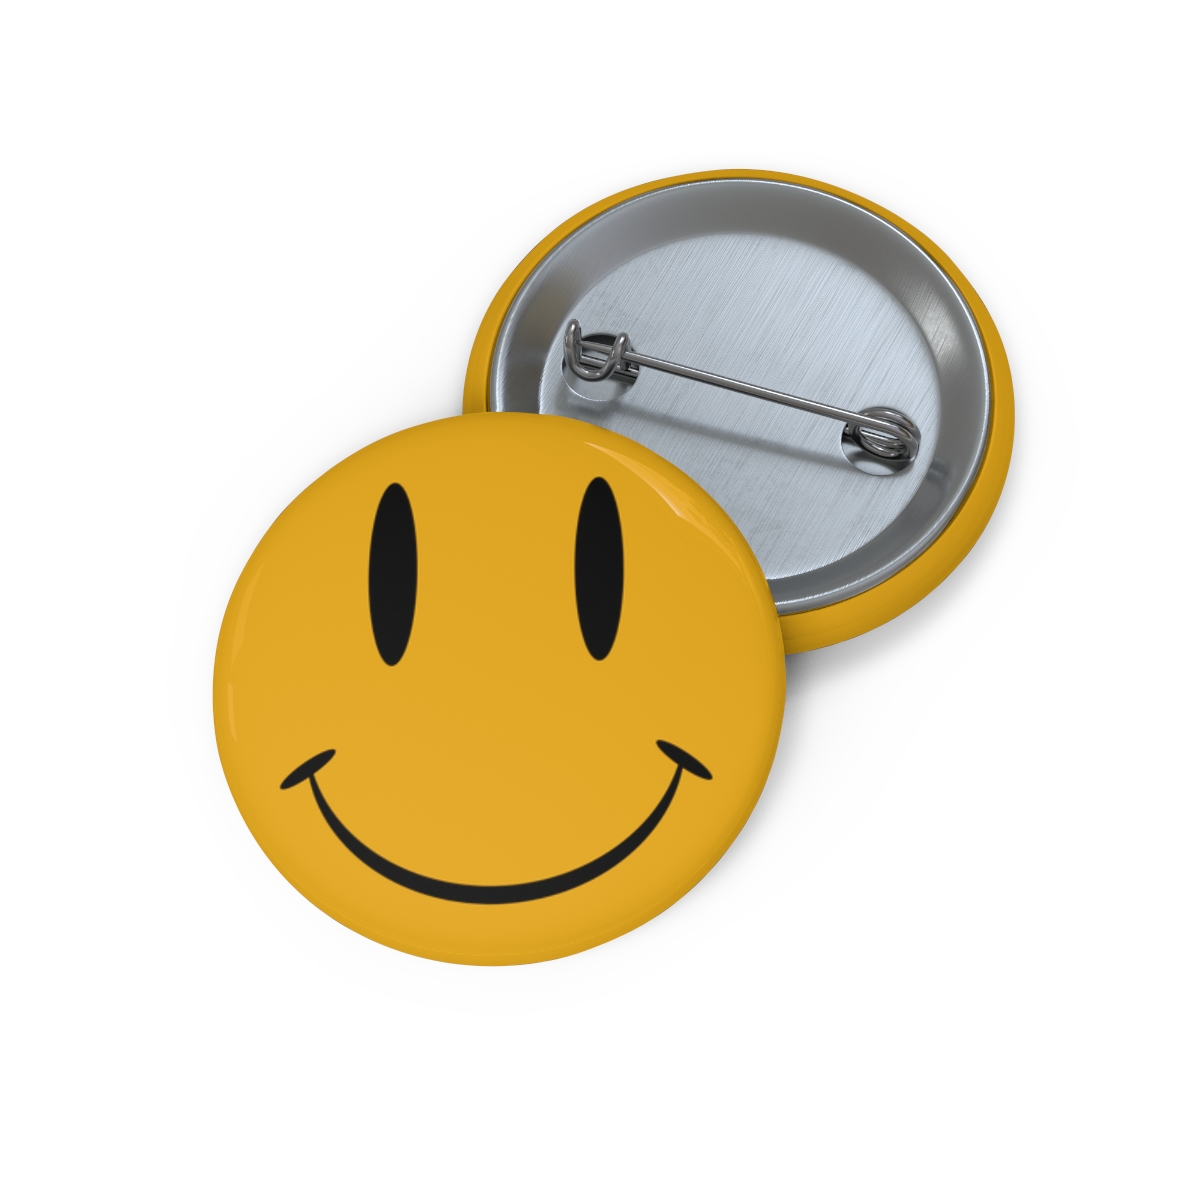 POSTAL Dude Smiley Pin (US) product thumbnail image